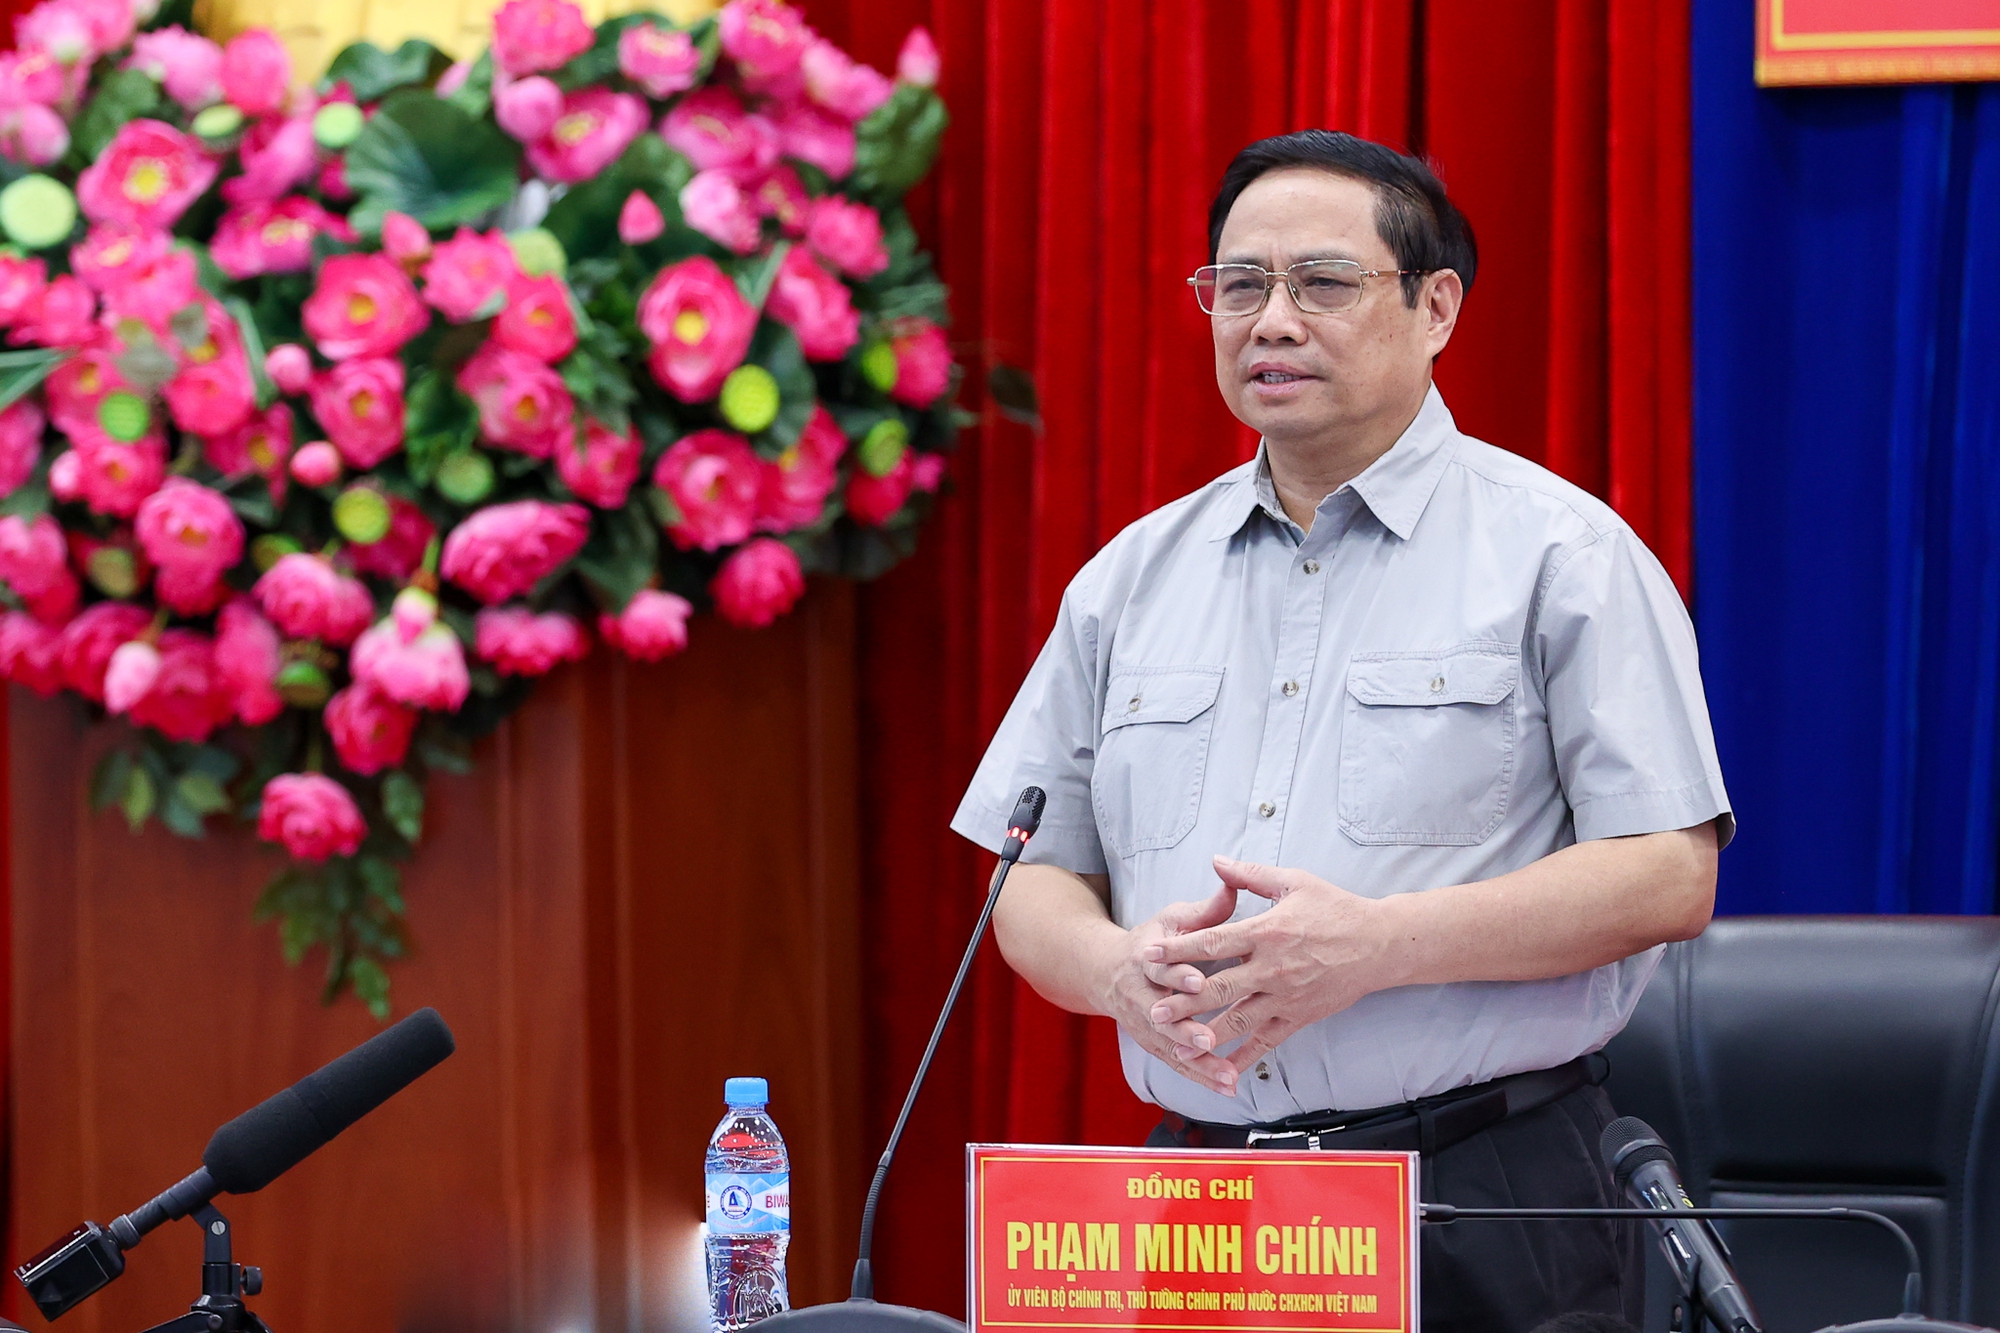 Thủ tướng Phạm Minh Chính phát biểu tại cuộc làm việc với Ban Thường vụ Tỉnh ủy Bình Dương (Ảnh: VGP/Nhật Bắc)